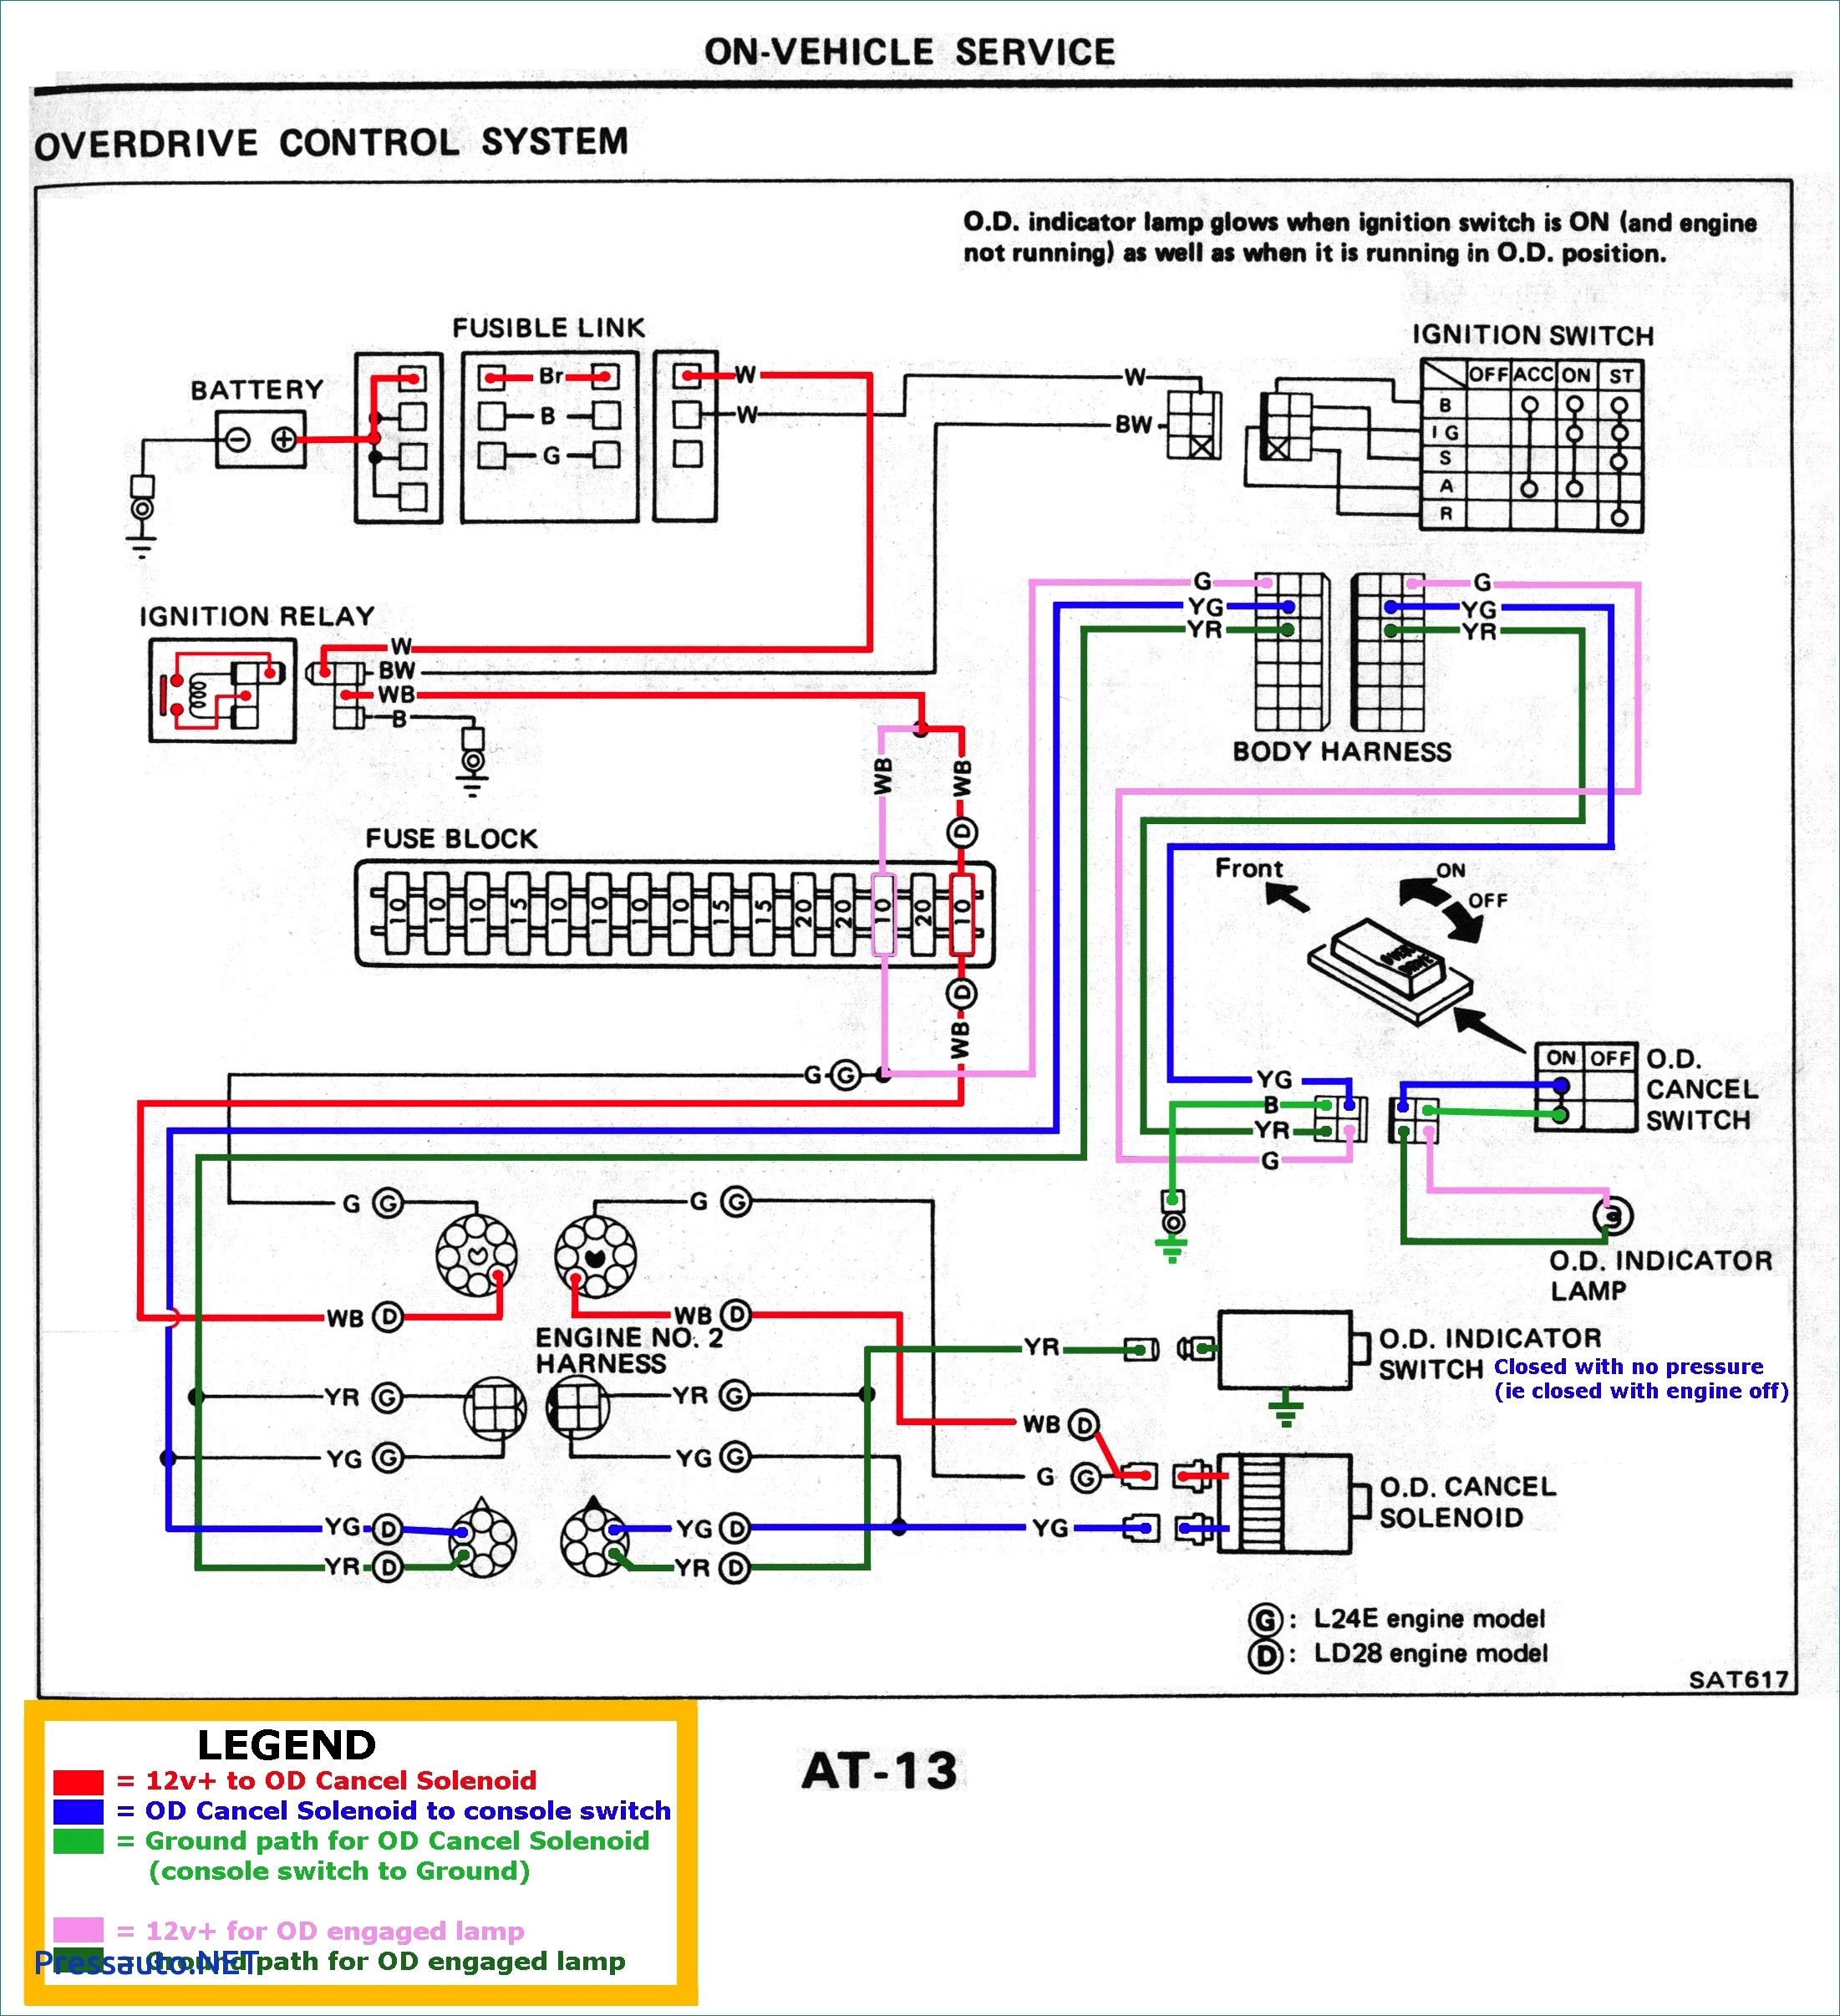 1988 Suzuki Samurai Wiring Diagram Best Mercedes Wiring Diagrams Free Download